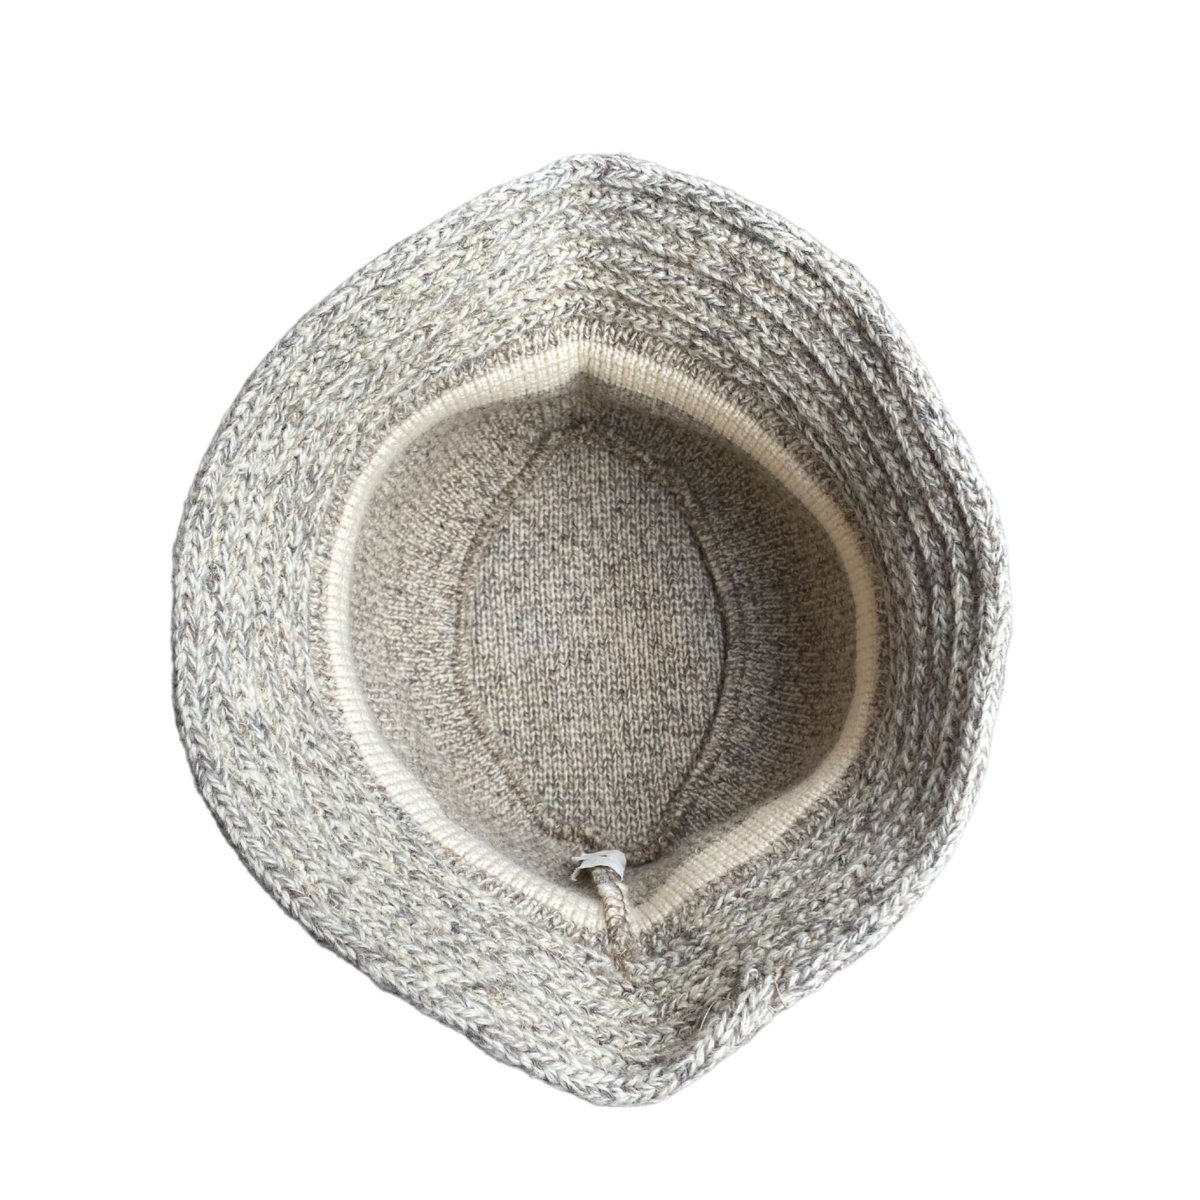 penthouse knits wool bucket hat | UMU